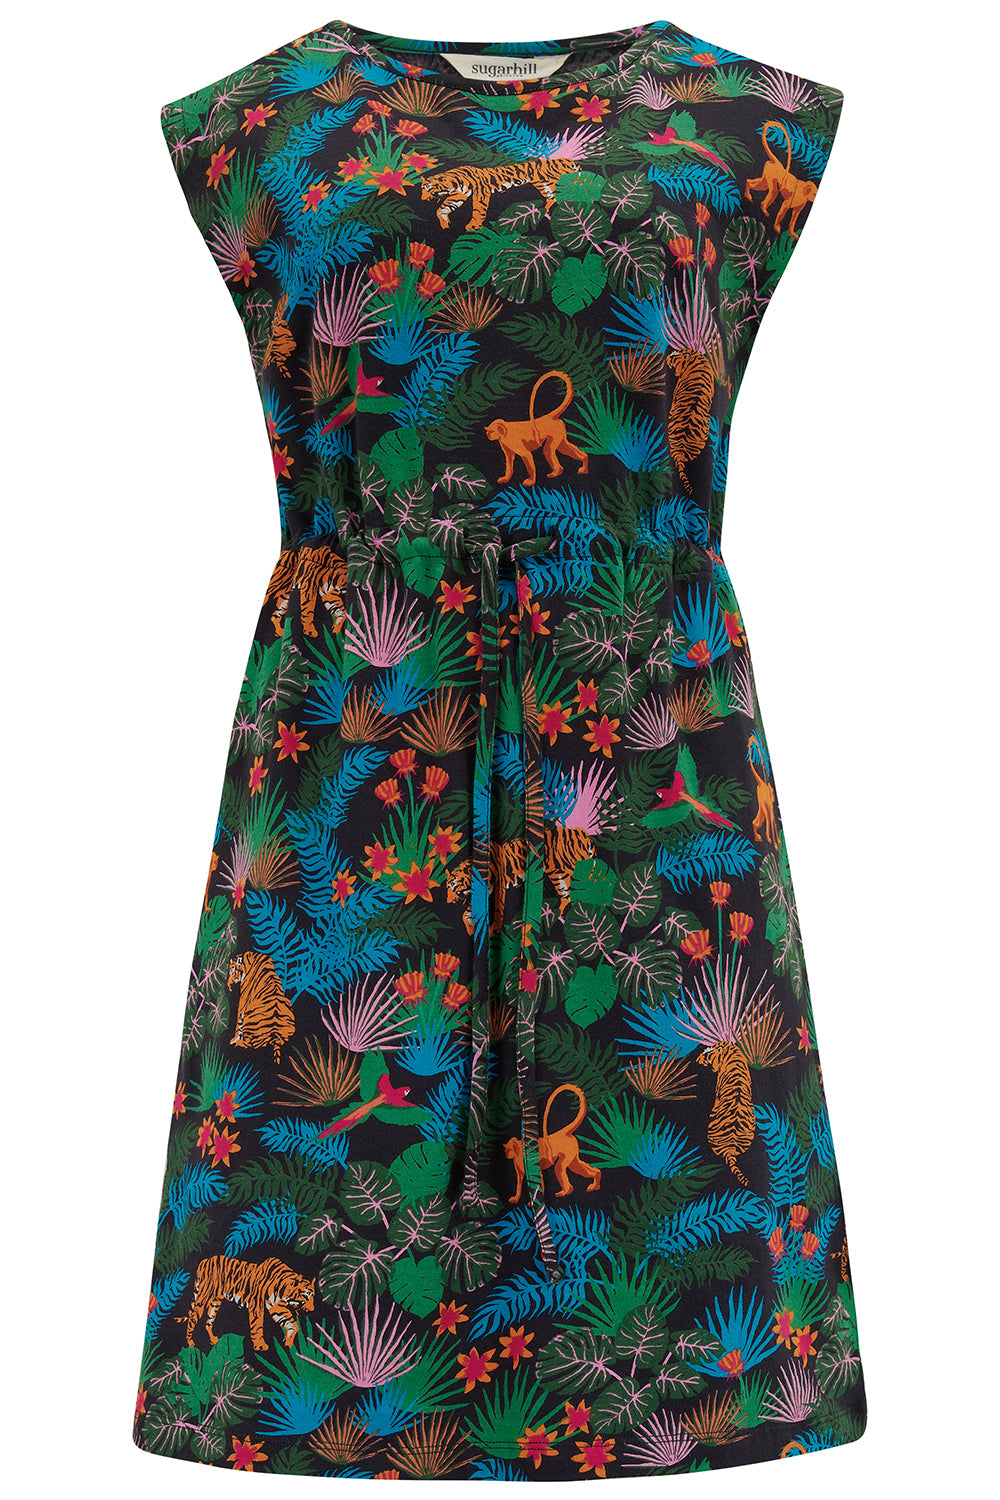 Sugarhill Brighton Women's Sally Jersey Mini Dress Black/multi, Jungle In Animal Print